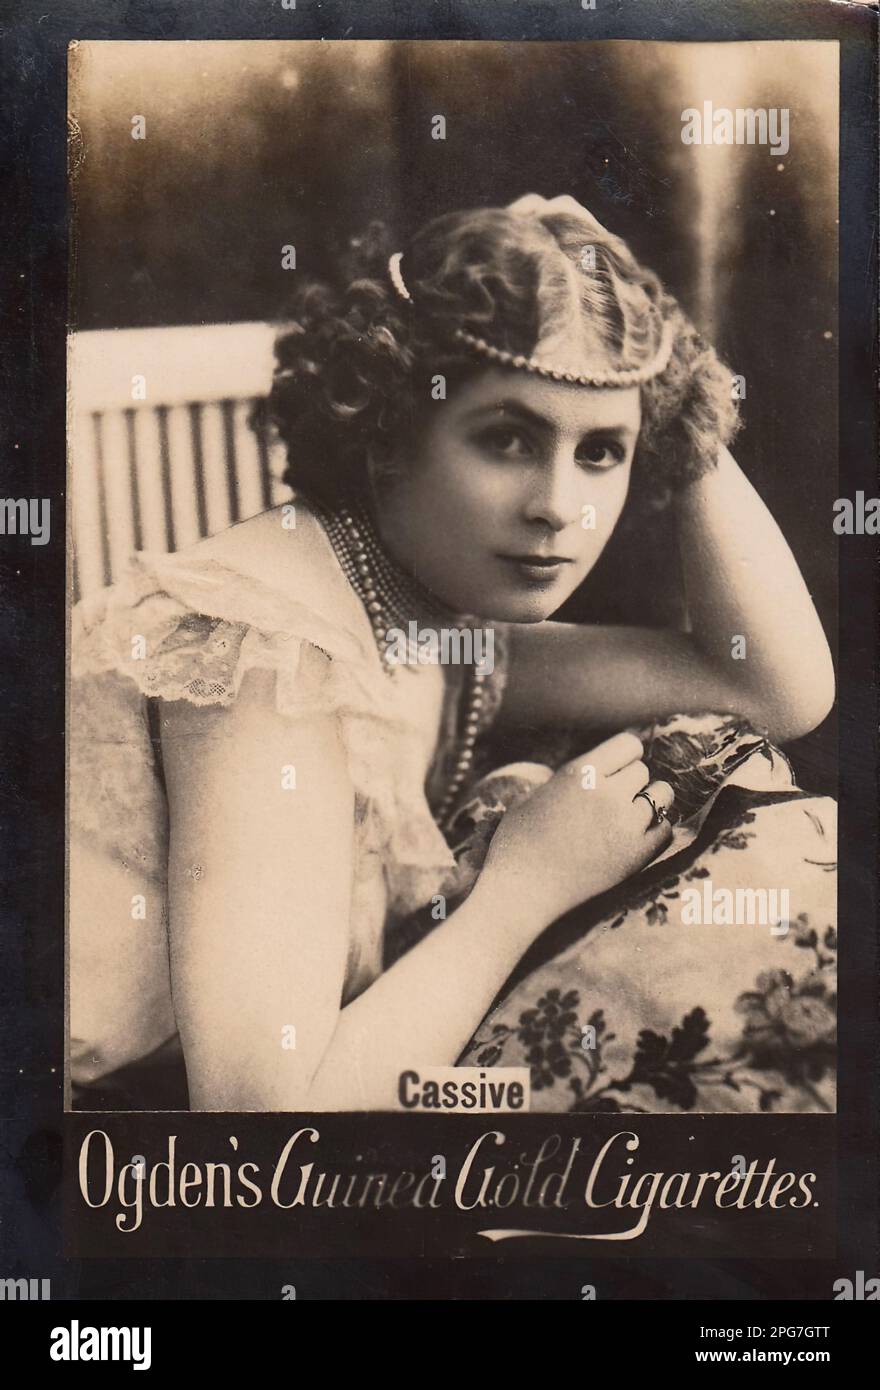 Porträt der Schauspielerin Cassive - Vintage Cigarette Card, Viktorianisches Zeitalter Stockfoto